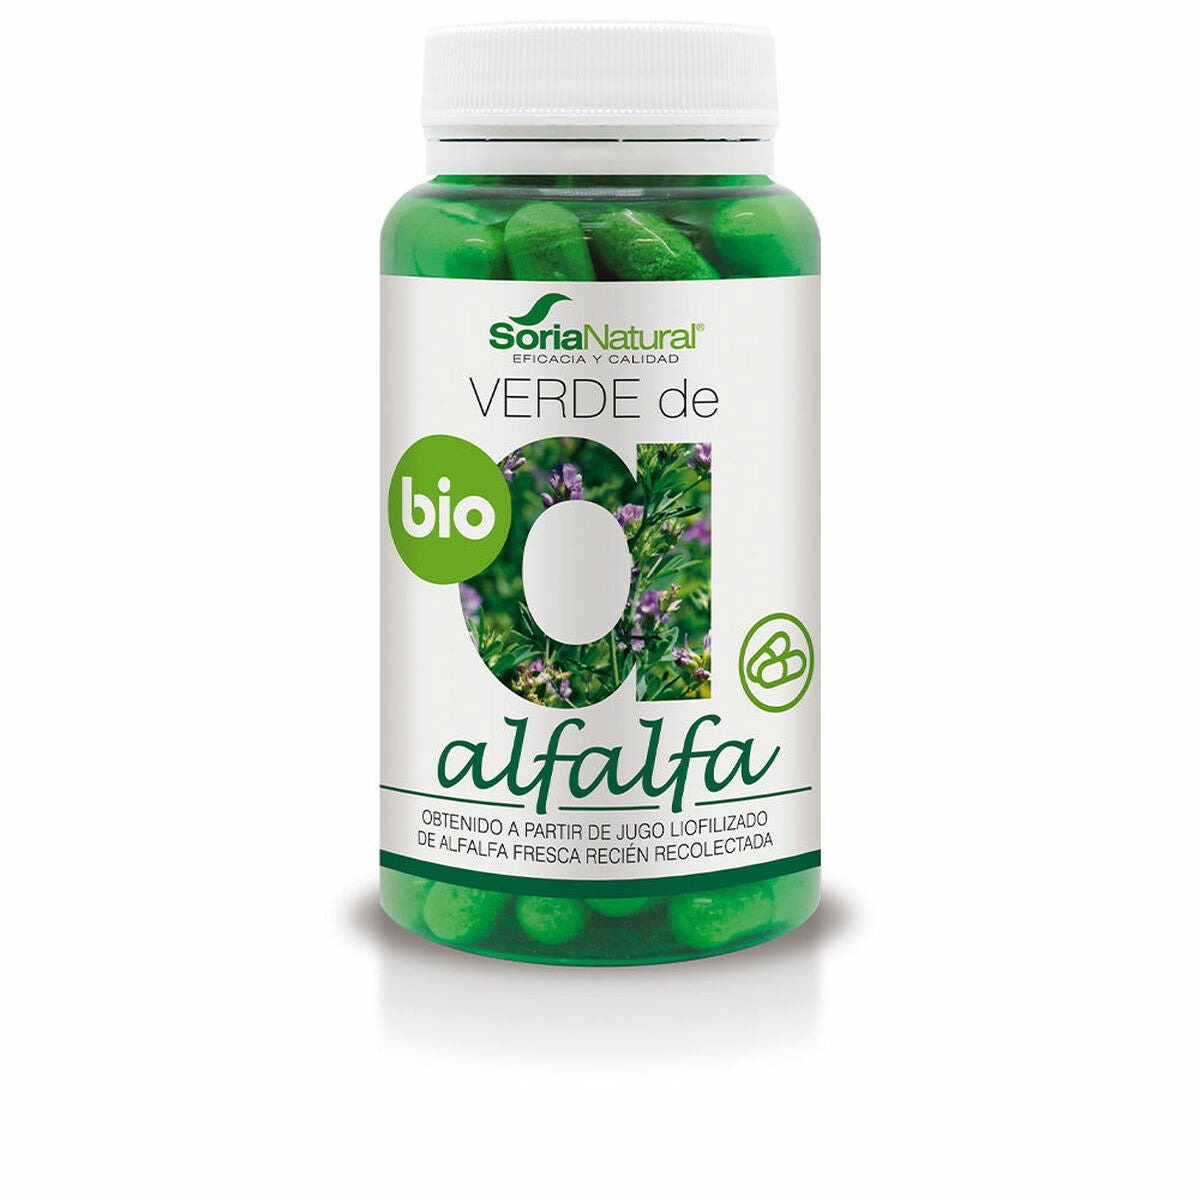 Digestive supplement Soria Natural Verde De Alfalfa Alfalfa 80 Units-0